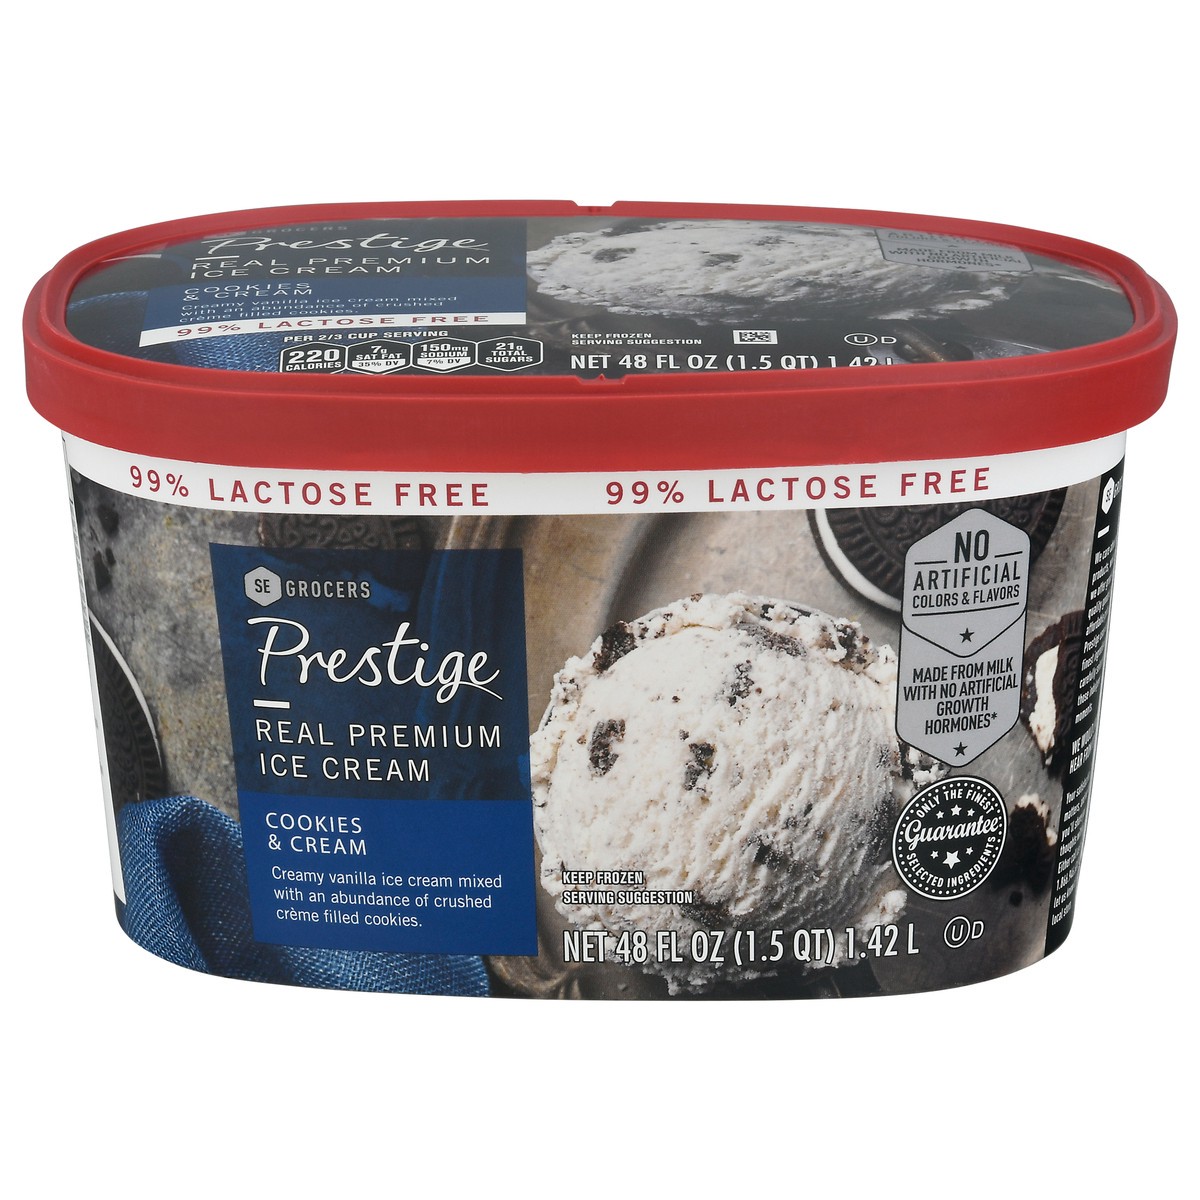 slide 1 of 9, Prestige Real Premium Ice Cream 99% Lactose Free Cookies & Cream, 48 oz